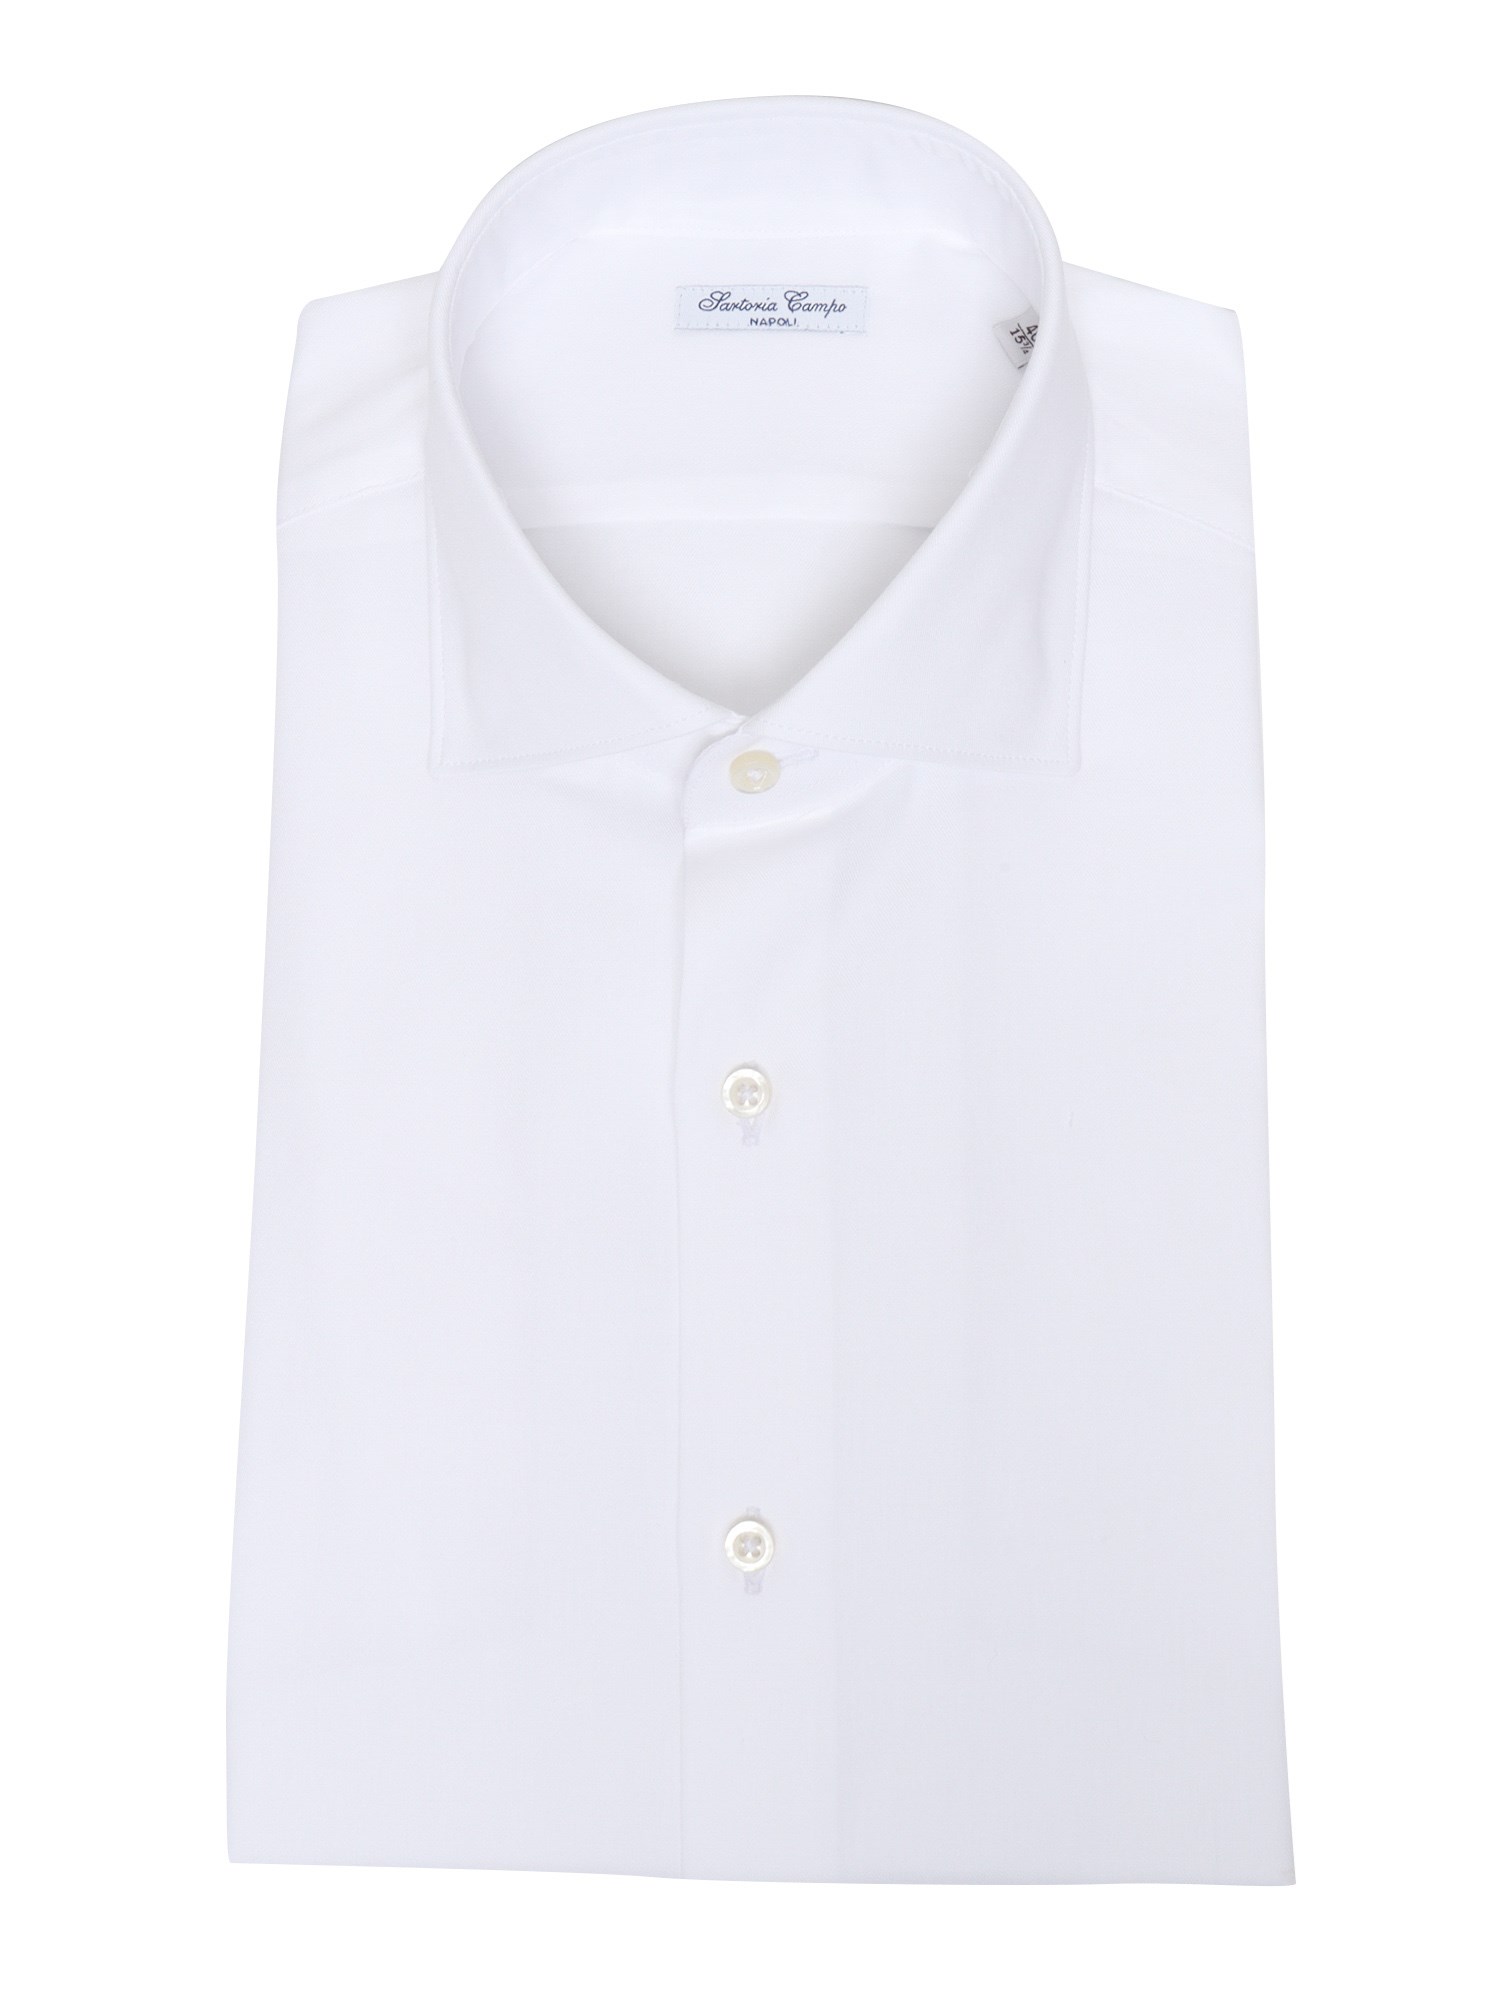 Sartoria Del Campo-sonrisa Classic Shirt In Bianco